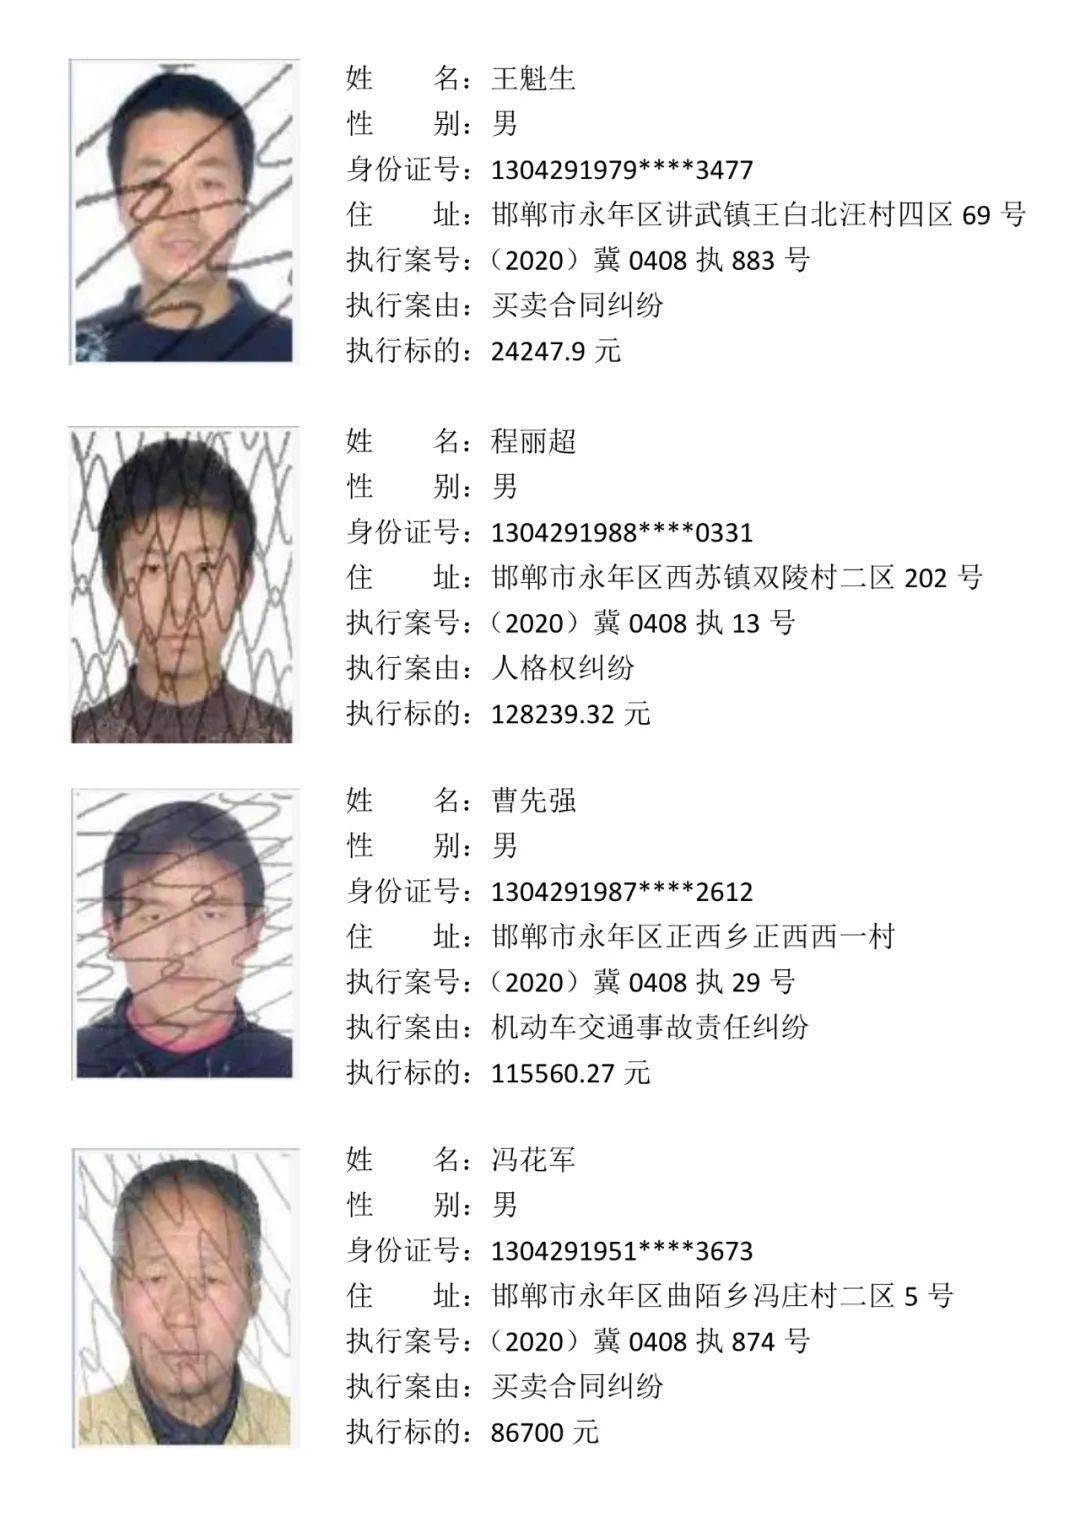 邯郸市永年区法院已将下列人员纳入失信被执行人名单